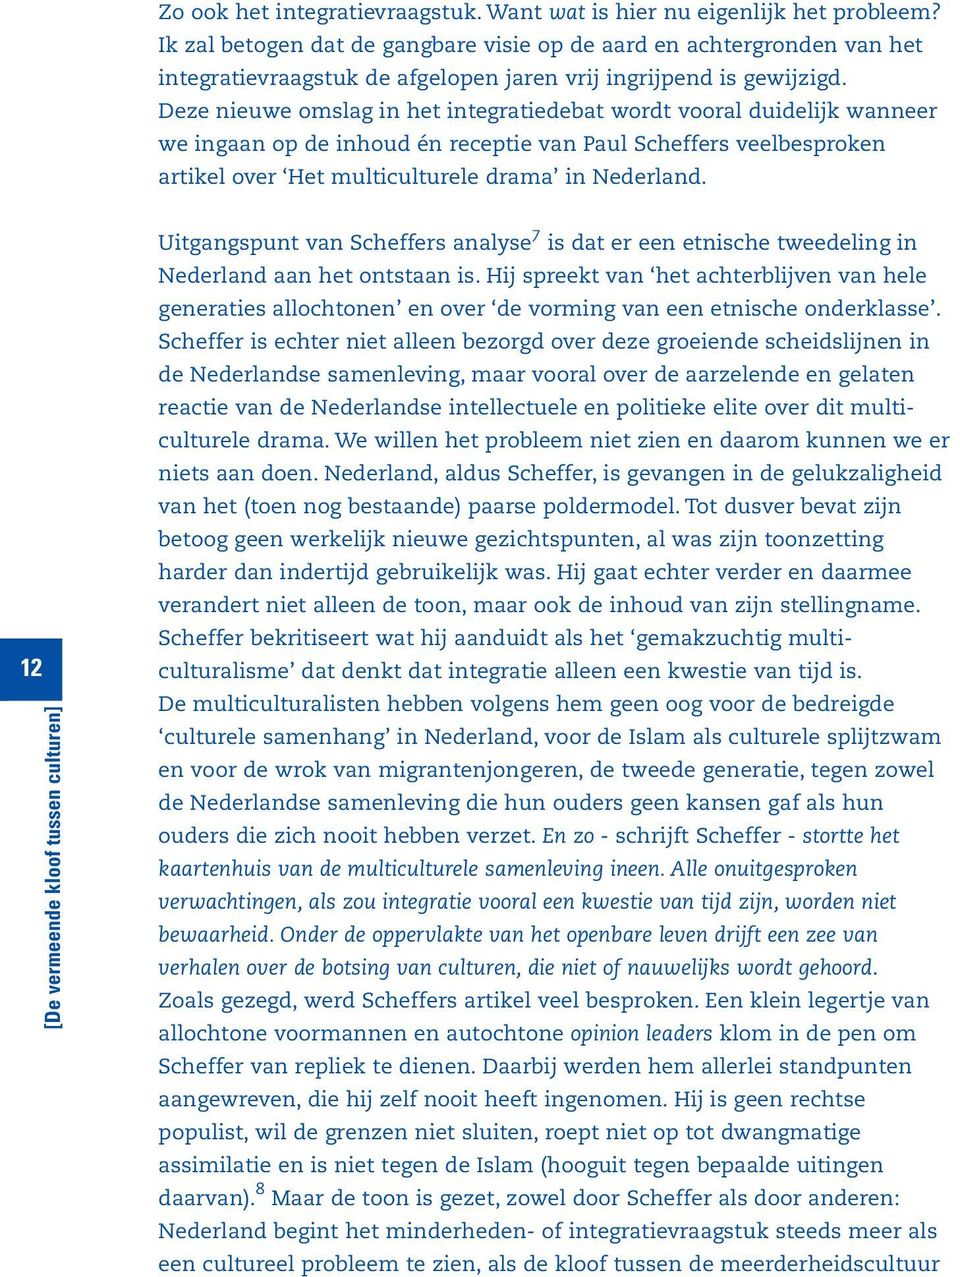 Deze nieuwe omslag in het integratiedebat wordt vooral duidelijk wanneer we ingaan op de inhoud én receptie van Paul Scheffers veelbesproken artikel over Het multiculturele drama in Nederland.